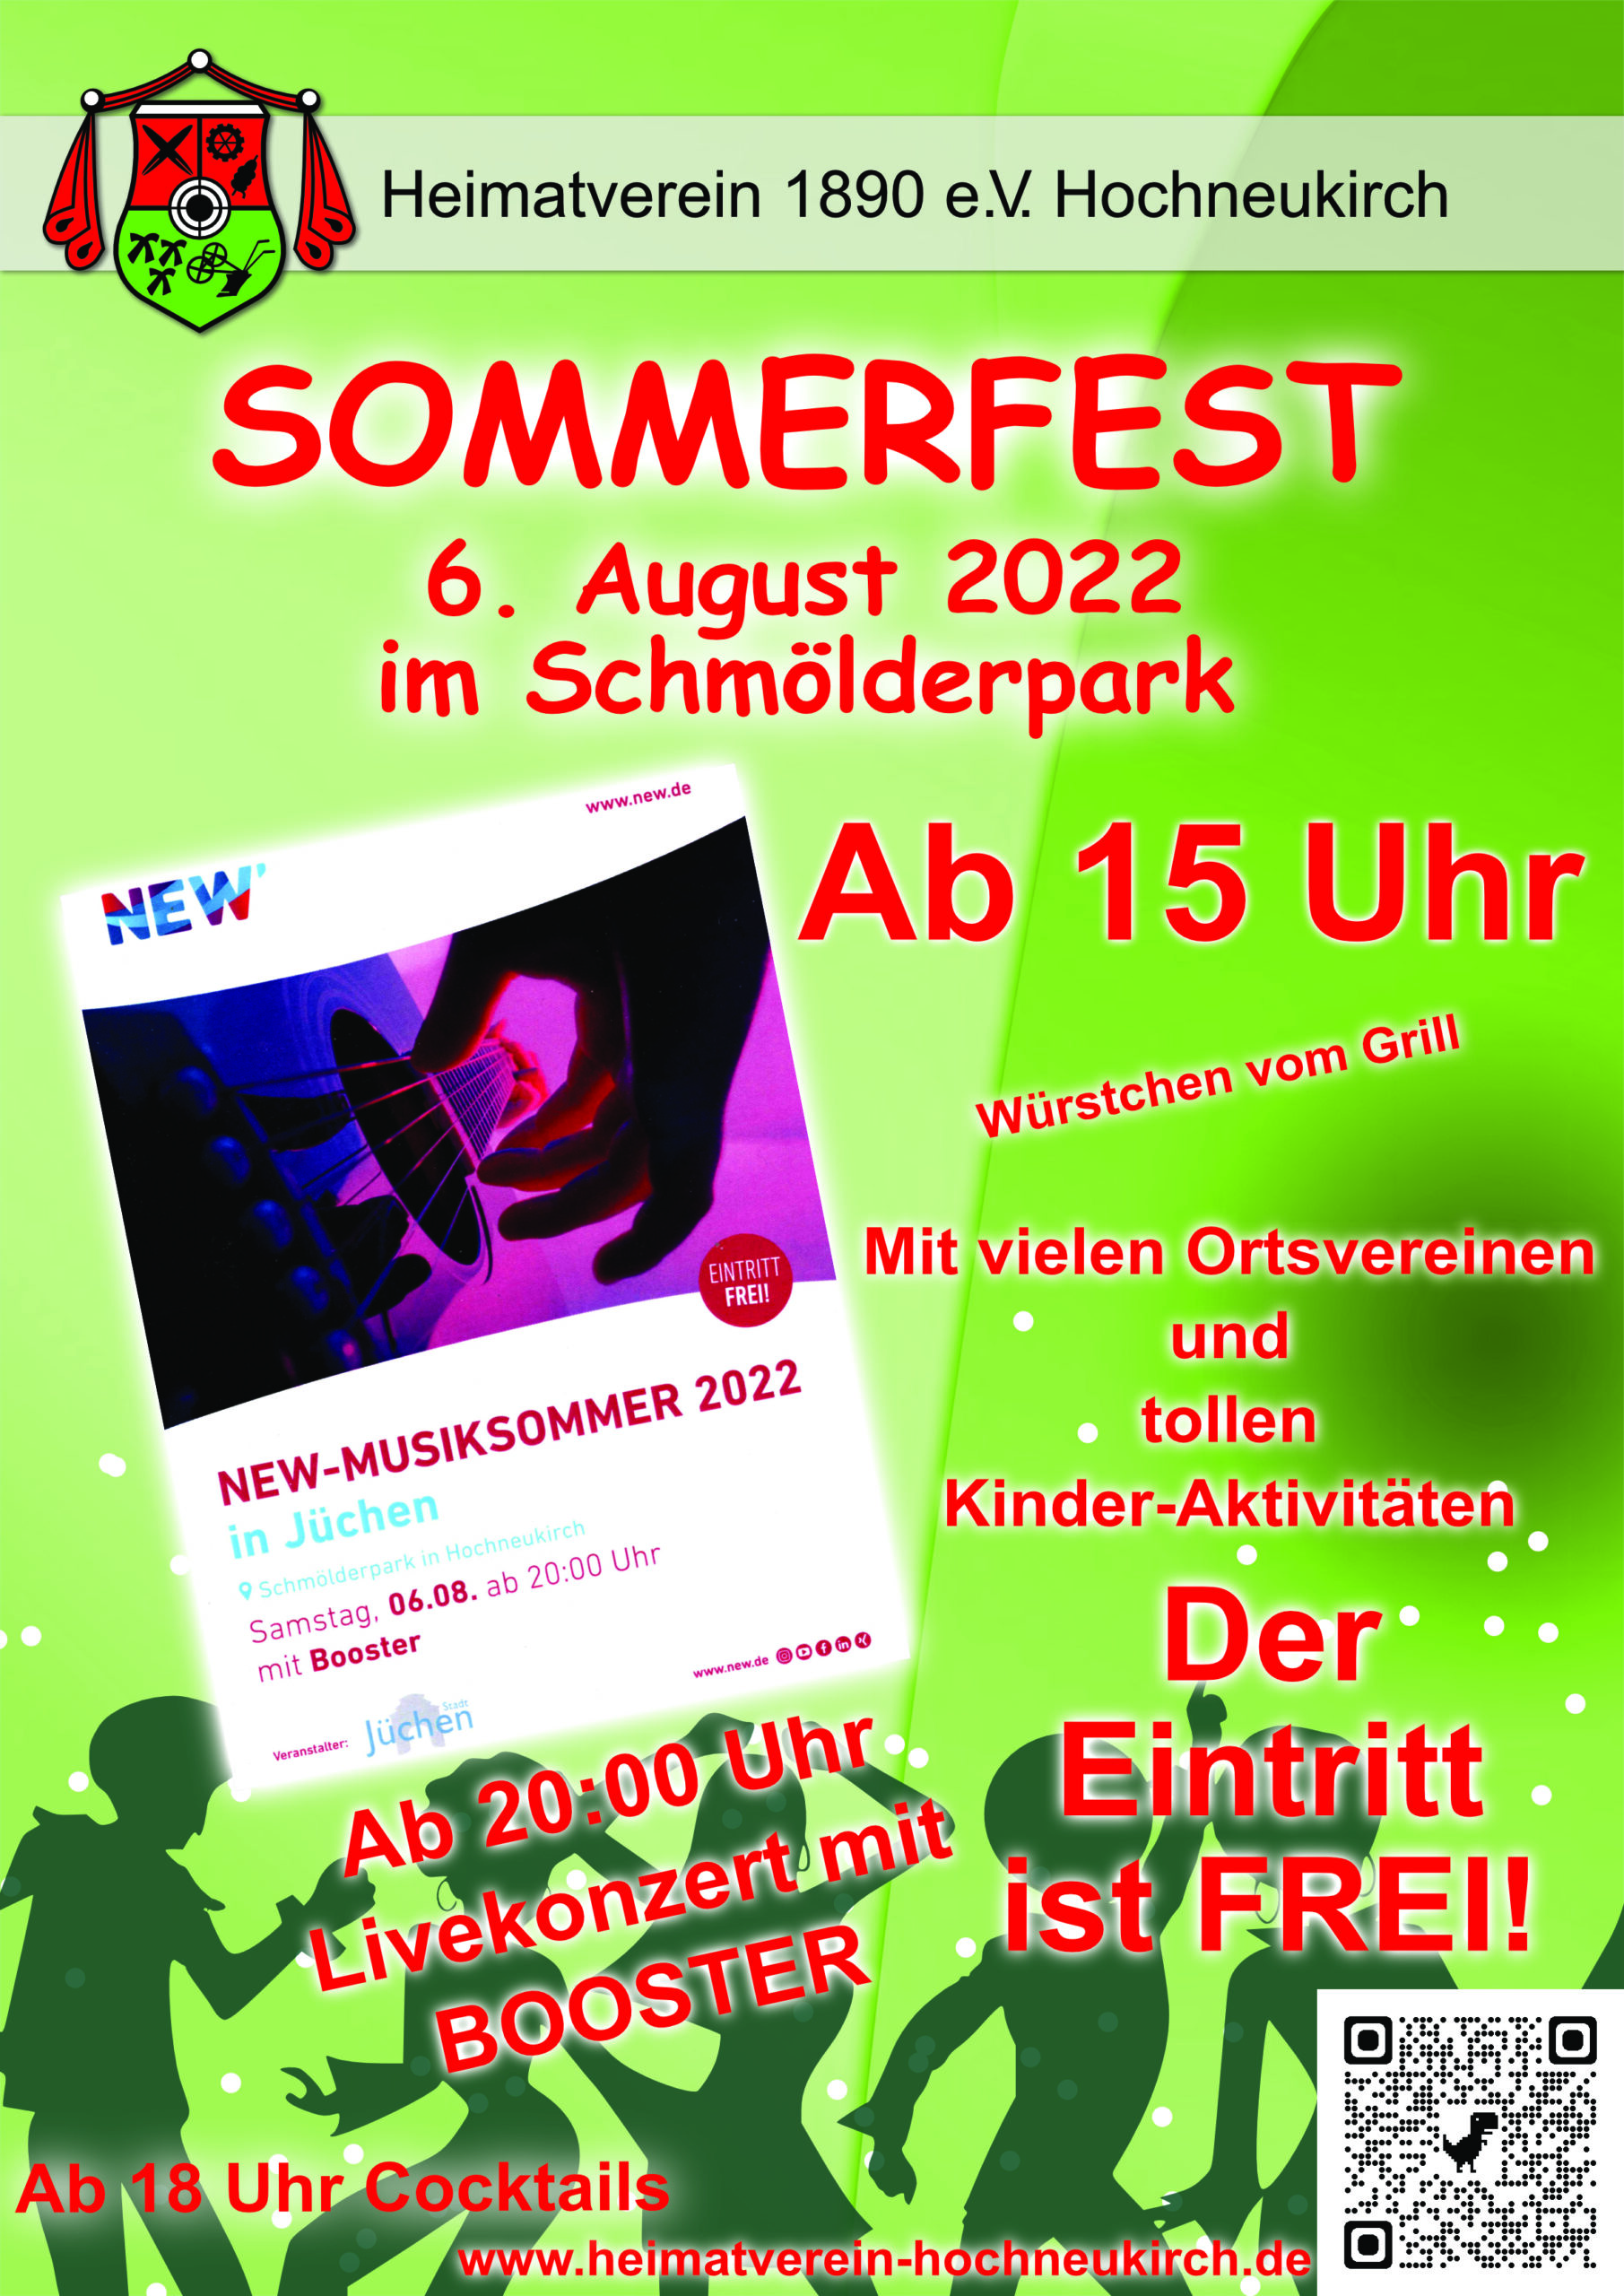 Sommerfest & NEW Musiksommer im Schmölderpark Hochneukirch